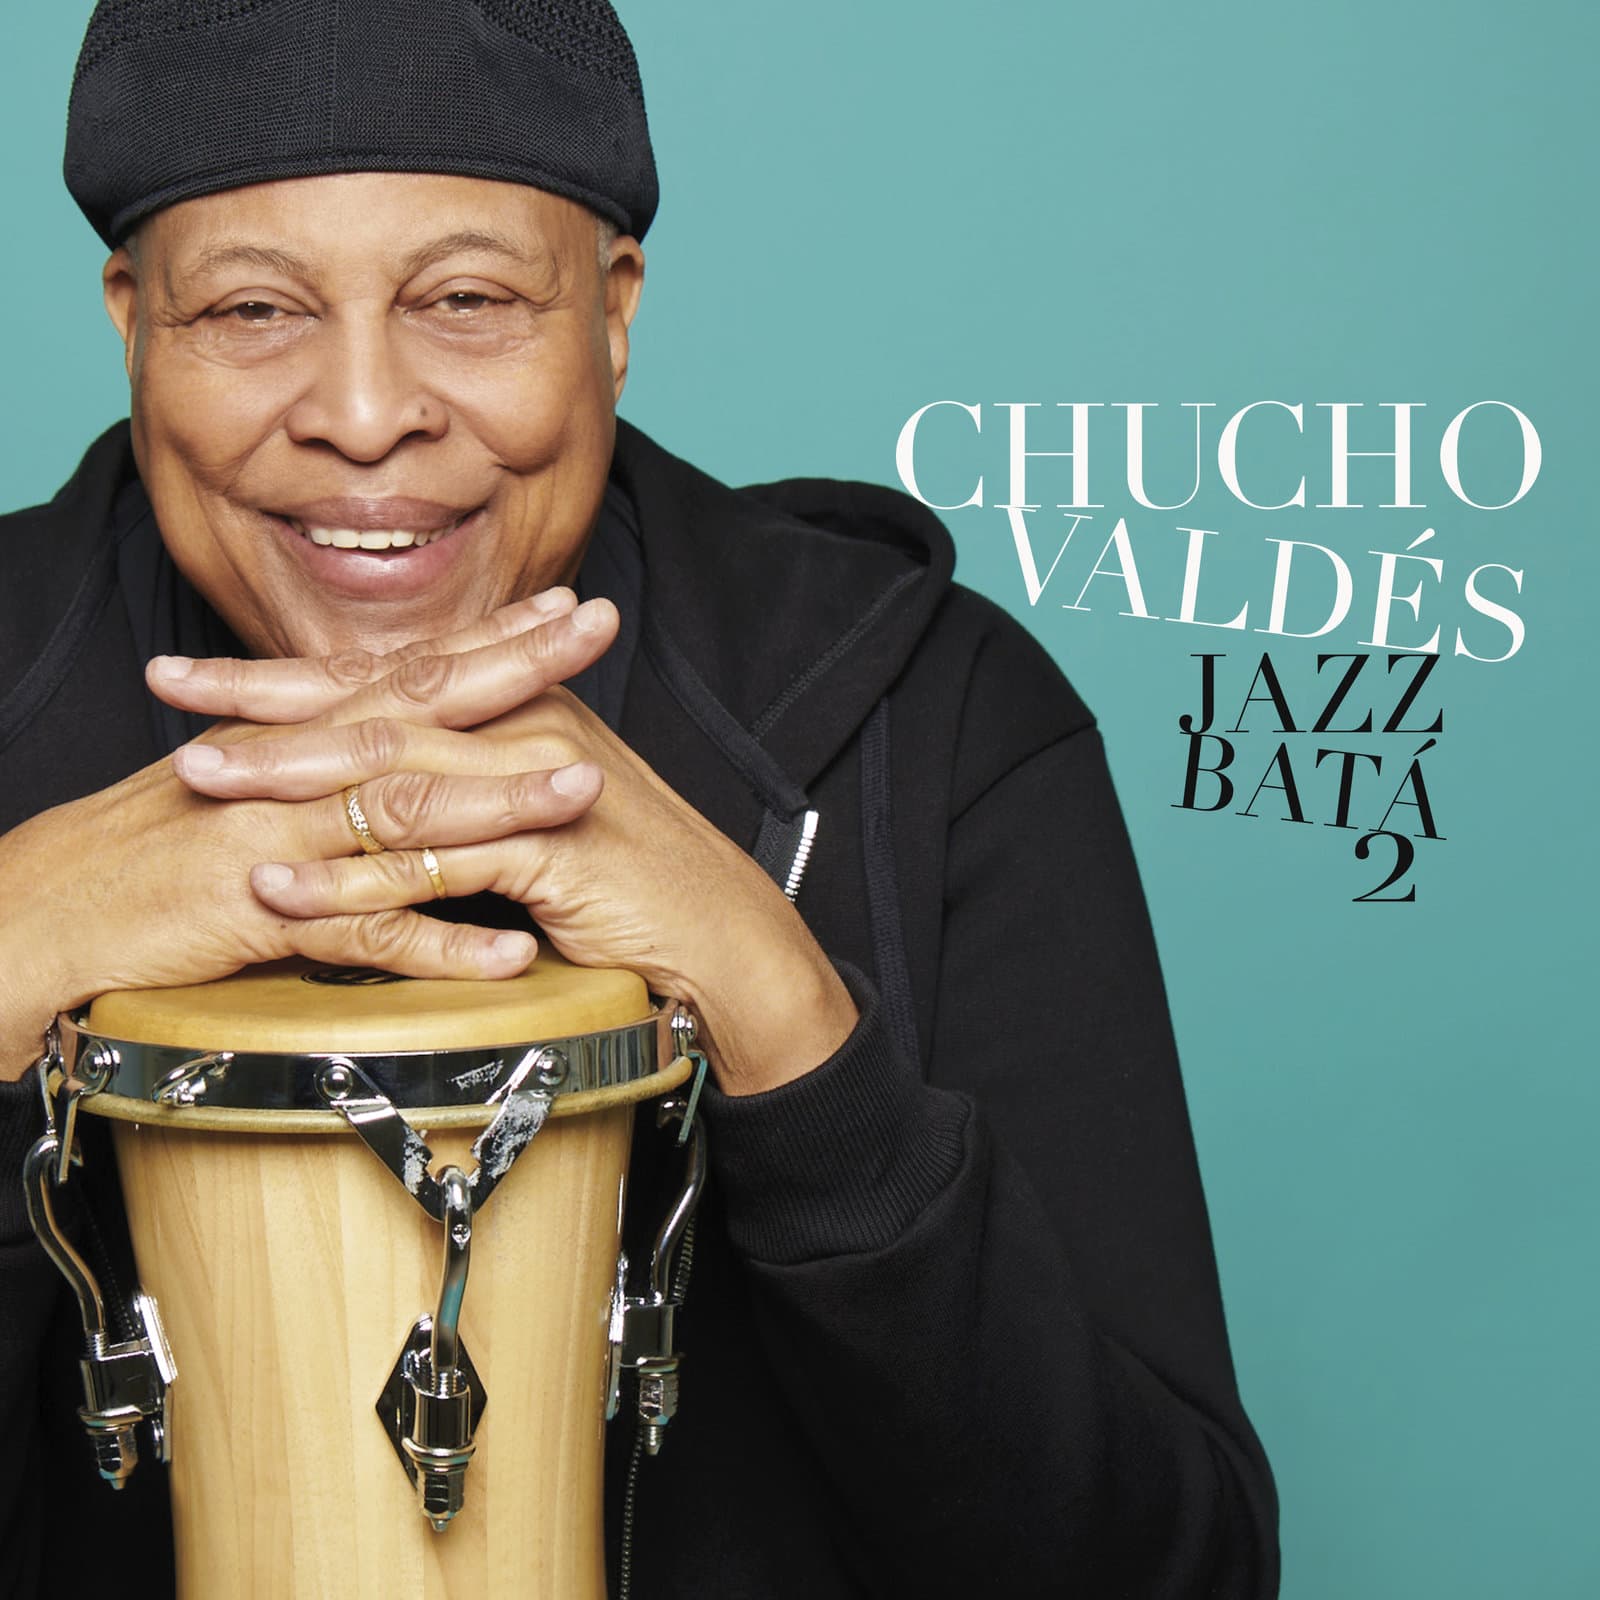 ÐÐ°ÑÑÐ¸Ð½ÐºÐ¸ Ð¿Ð¾ Ð·Ð°Ð¿ÑÐ¾ÑÑ Chucho Valdes - Jazz BatÃ¡ 2